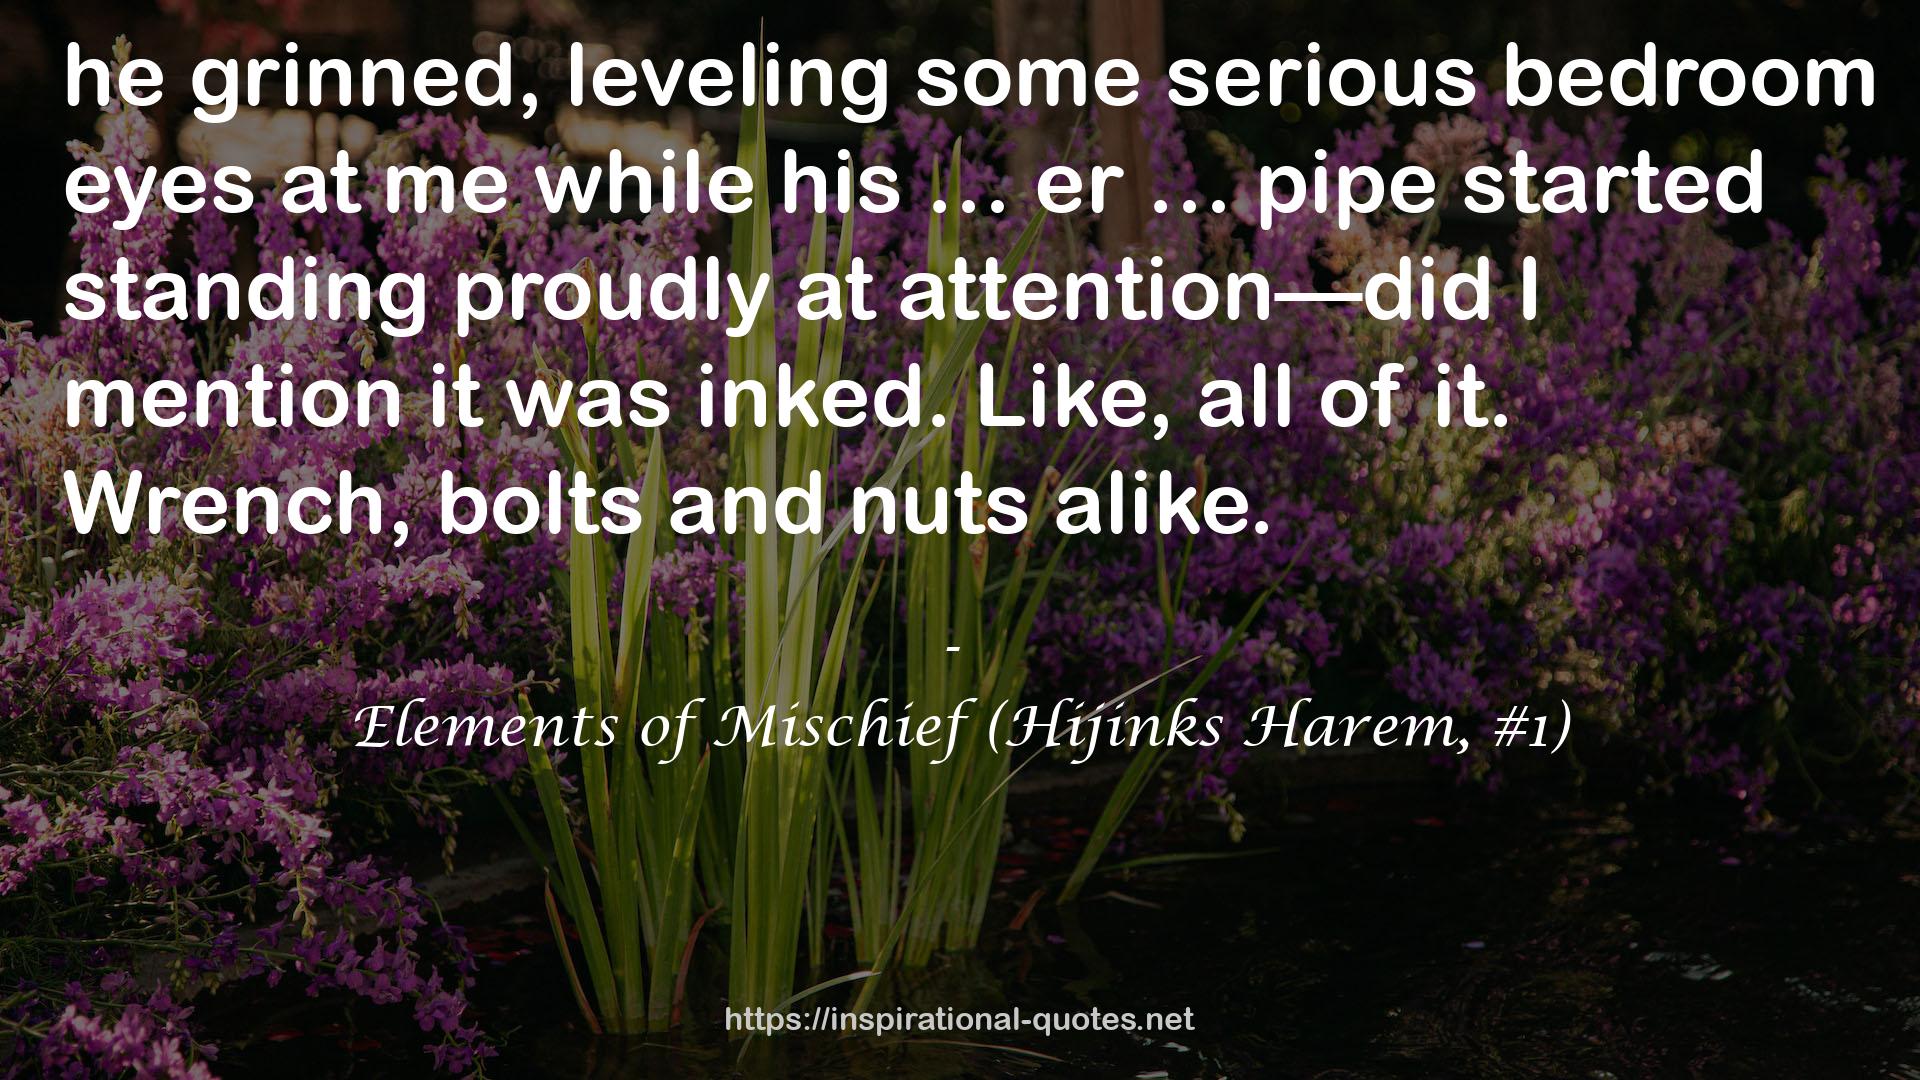 Elements of Mischief (Hijinks Harem, #1) QUOTES